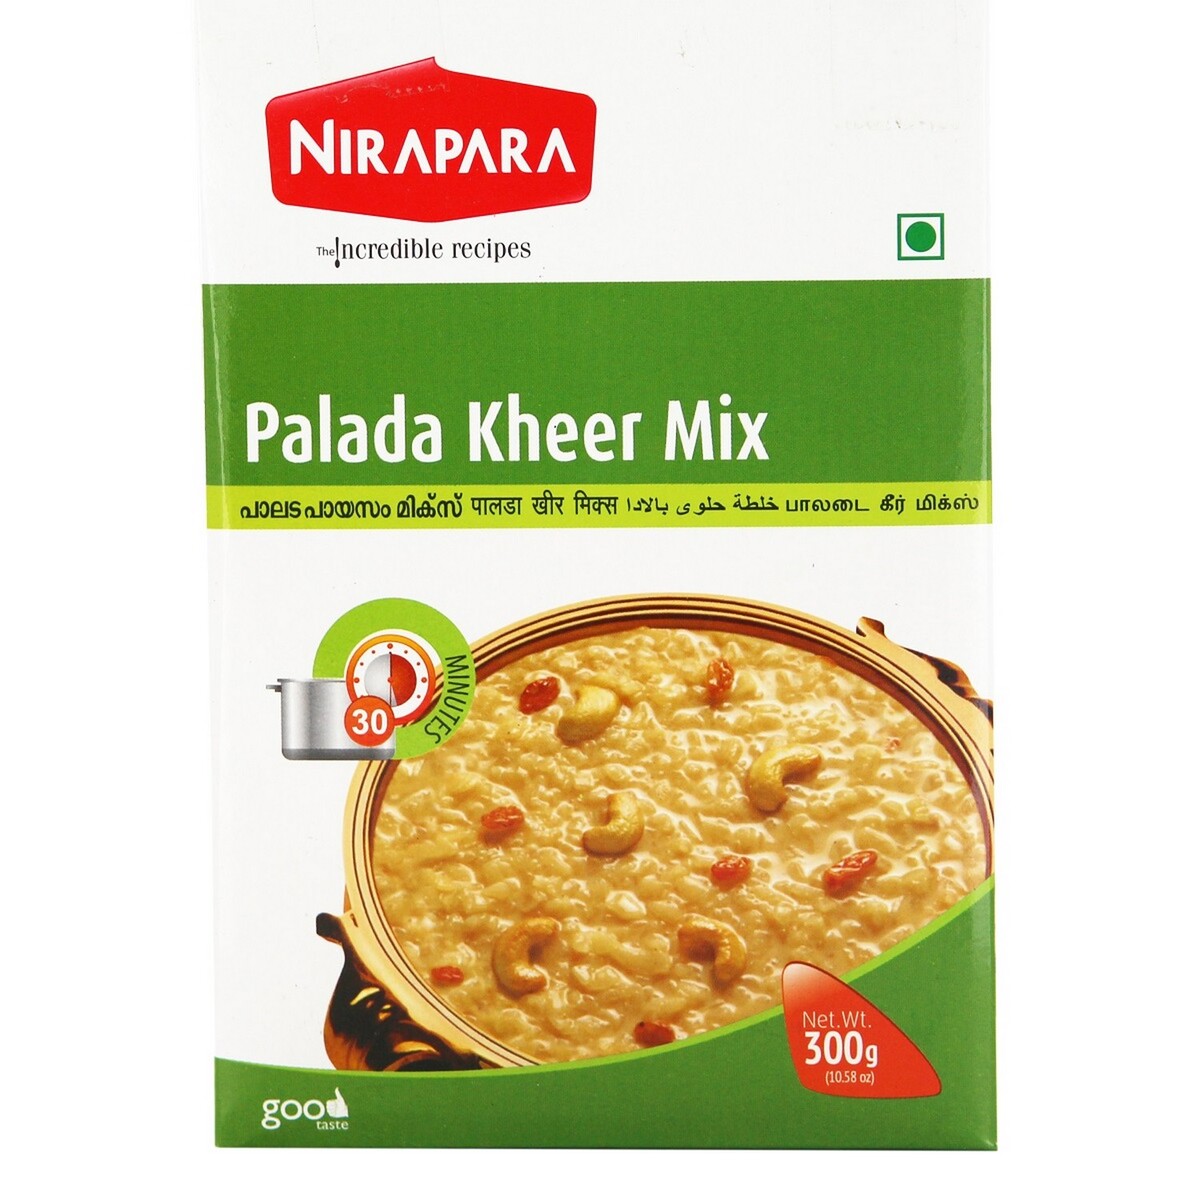 Nirapara Palada Kheer Mix 300g